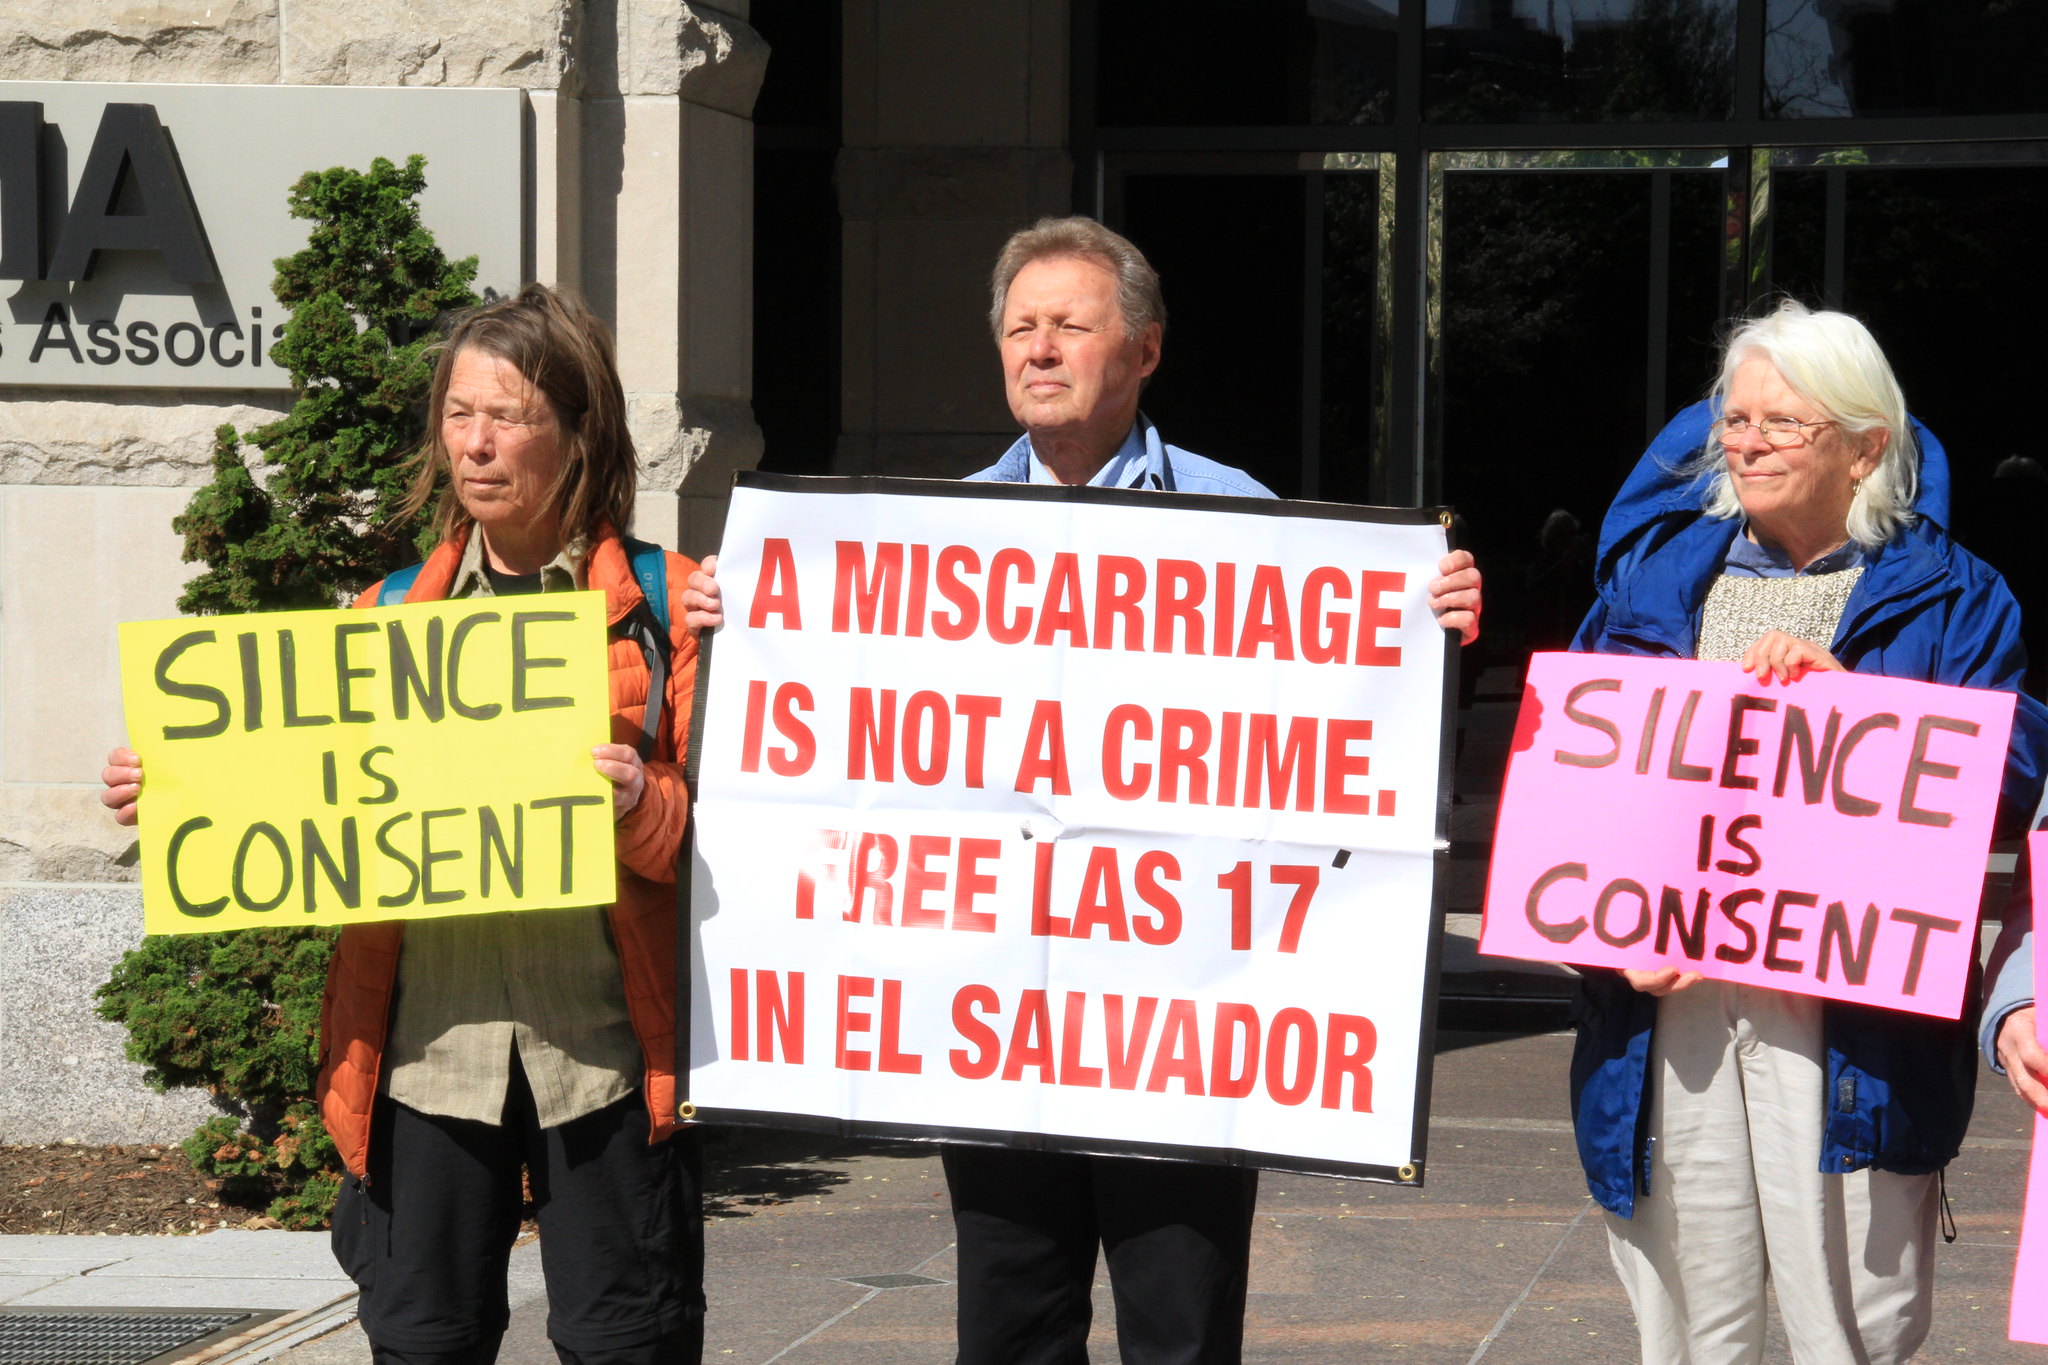 El Salvador abortion Image Flickr DC Protests